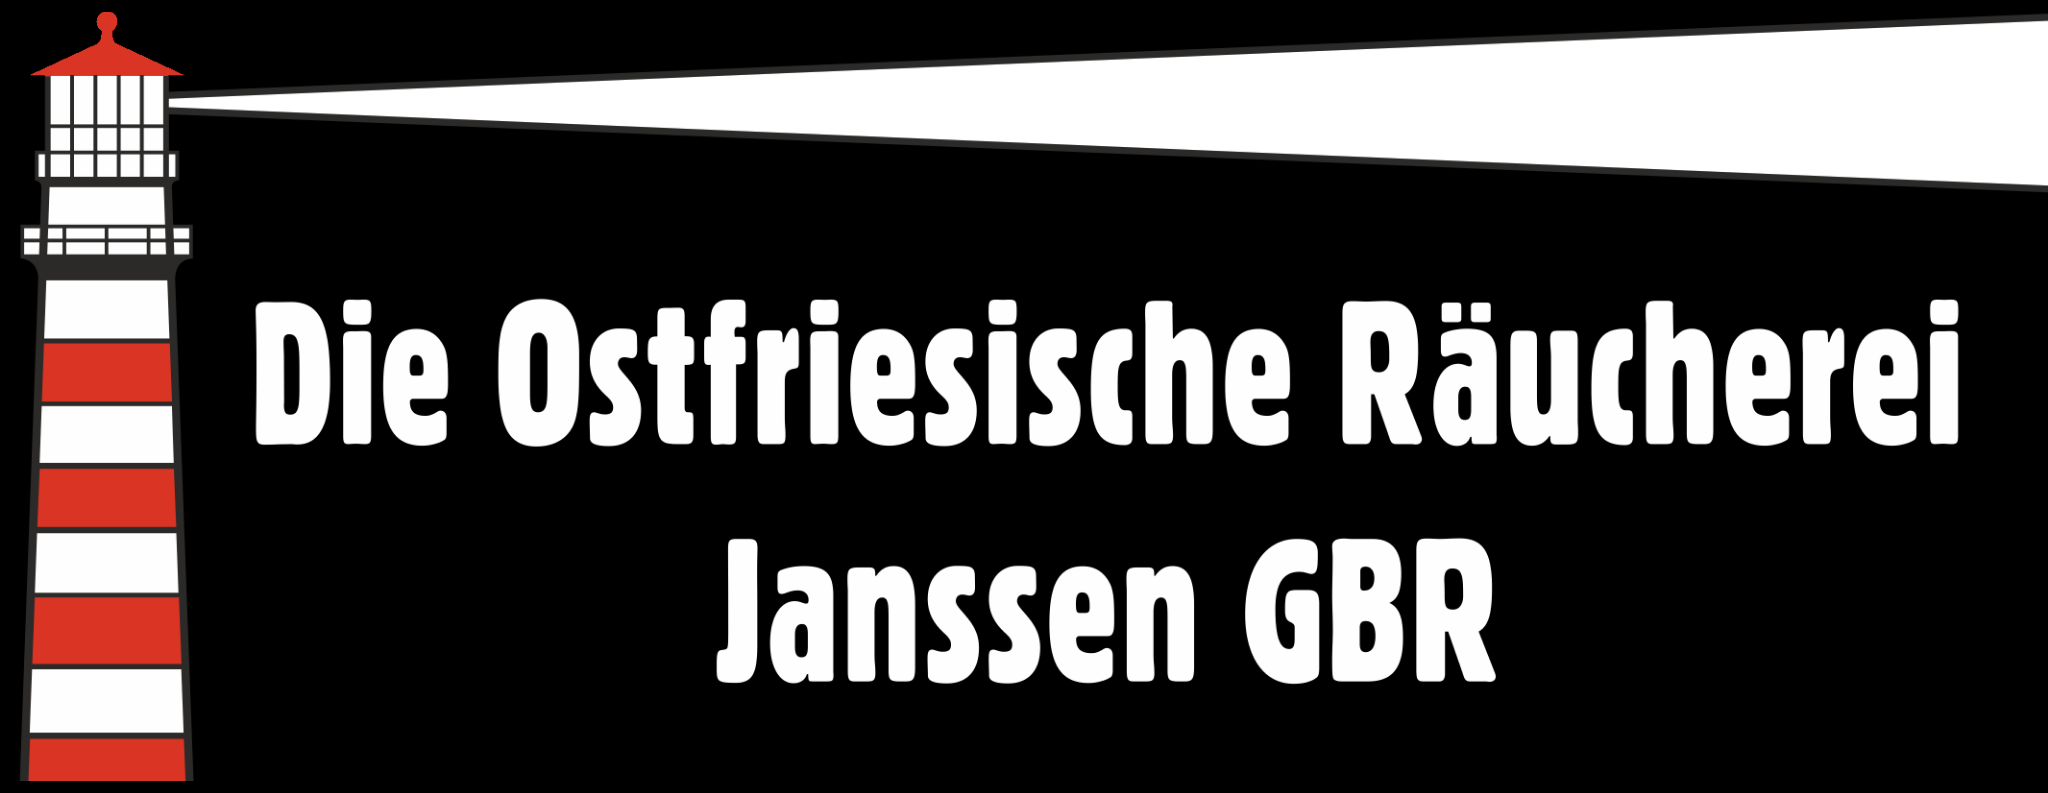 You are currently viewing Die ostfriesische Räucherei Janssen GbR